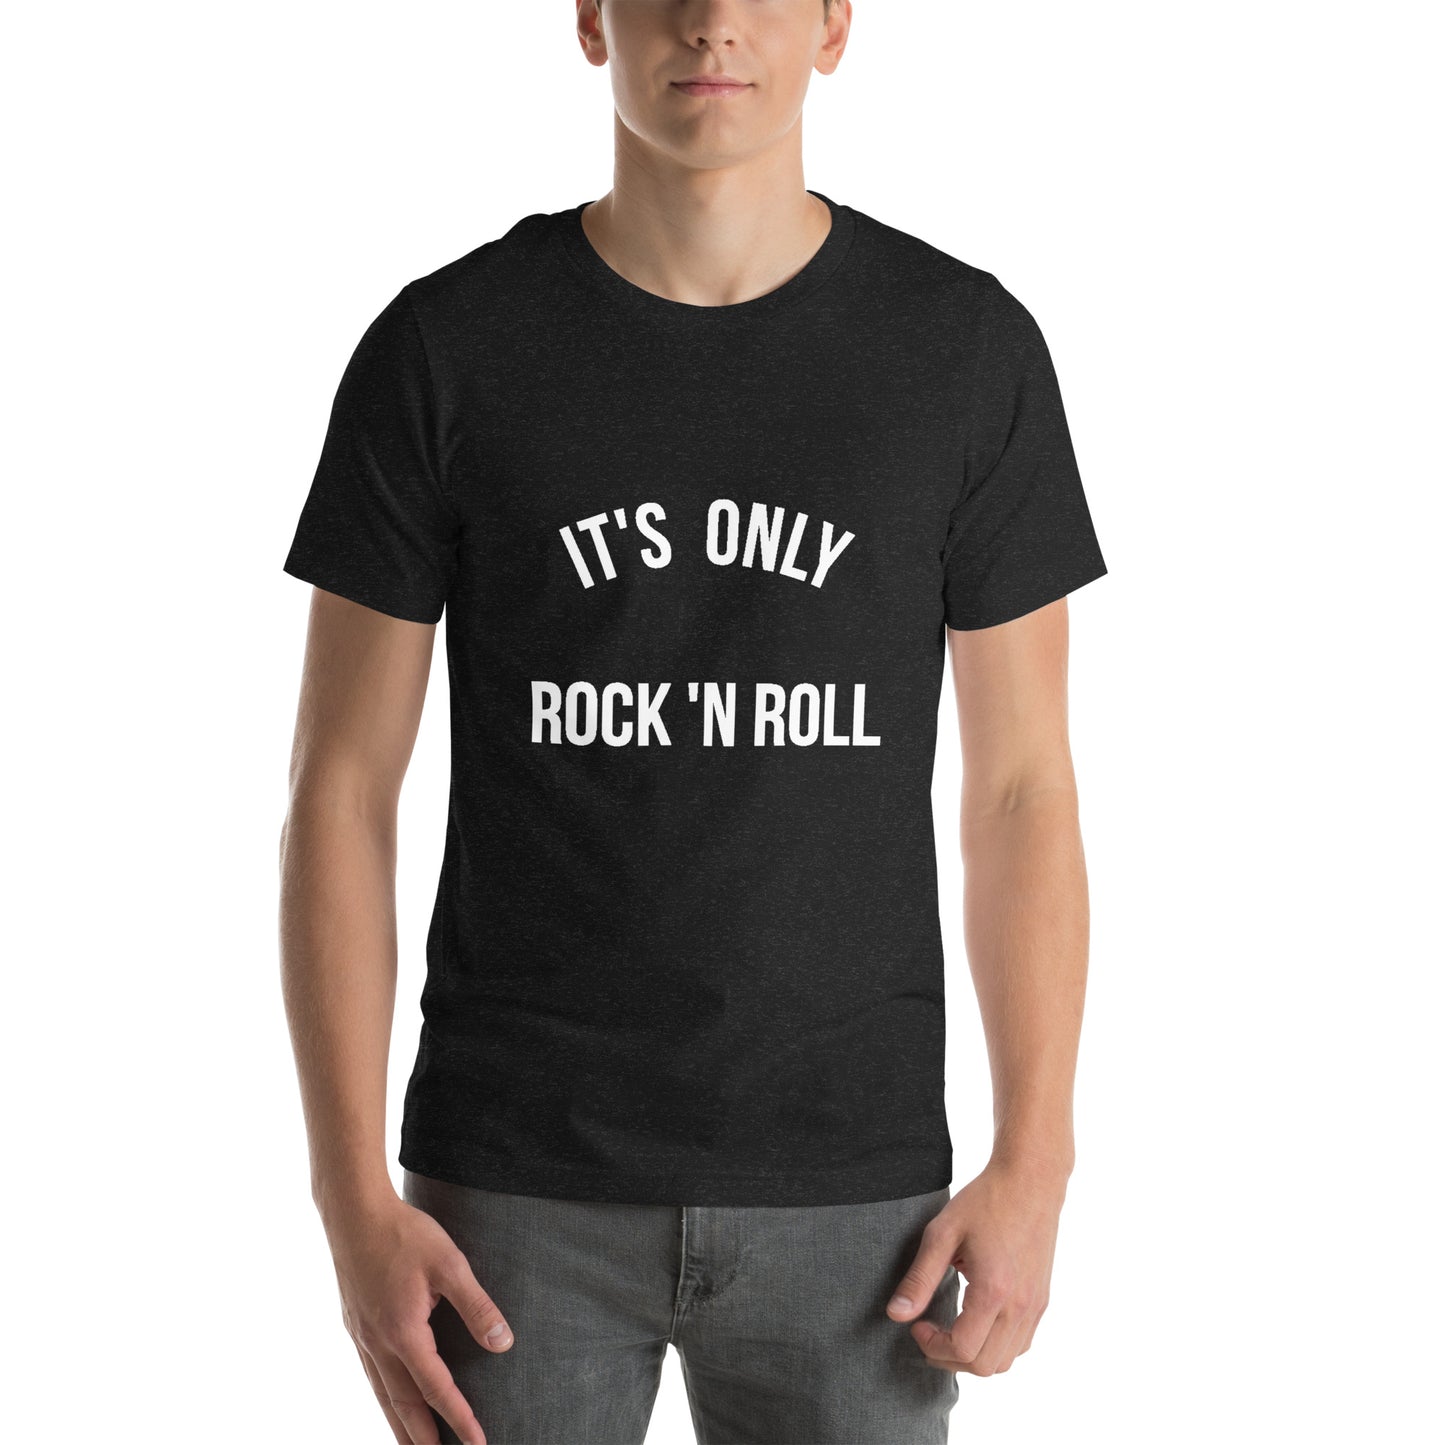 It's only ROCKNROLL Men round neck black T-Shirt